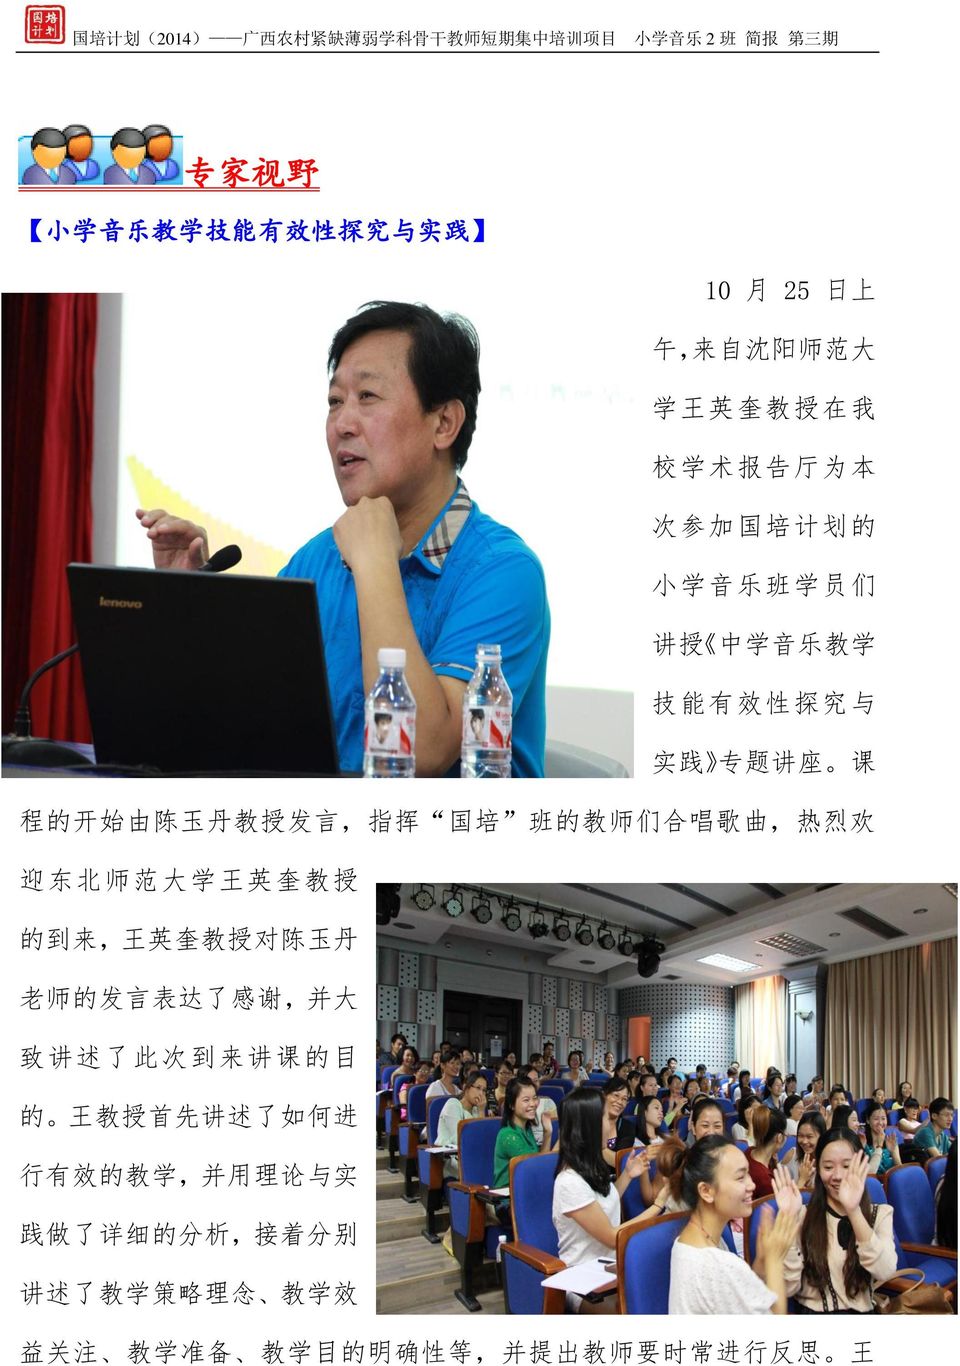 范 大 学 王 英 奎 教 授 的 到 来, 王 英 奎 教 授 对 陈 玉 丹 老 师 的 发 言 表 达 了 感 谢, 并 大 致 讲 述 了 此 次 到 来 讲 课 的 目 的 王 教 授 首 先 讲 述 了 如 何 进 行 有 效 的